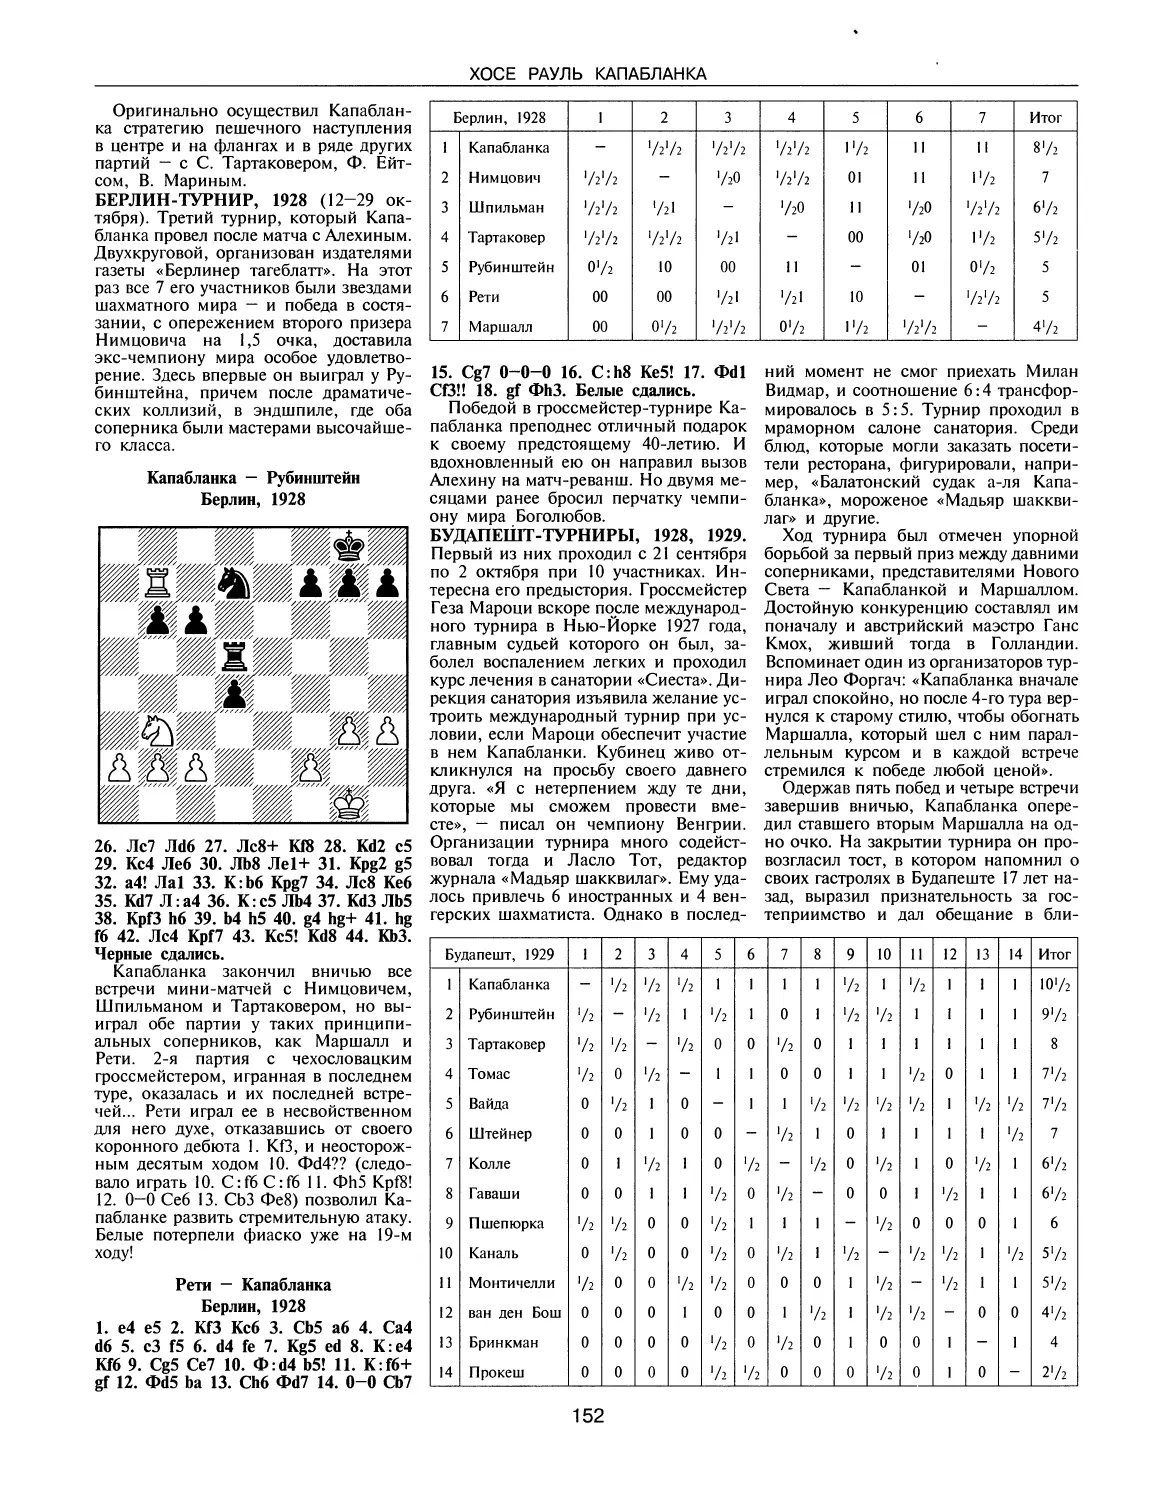 Берлин-турнир, 1928
Будапешт-турниры, 1928, 1929